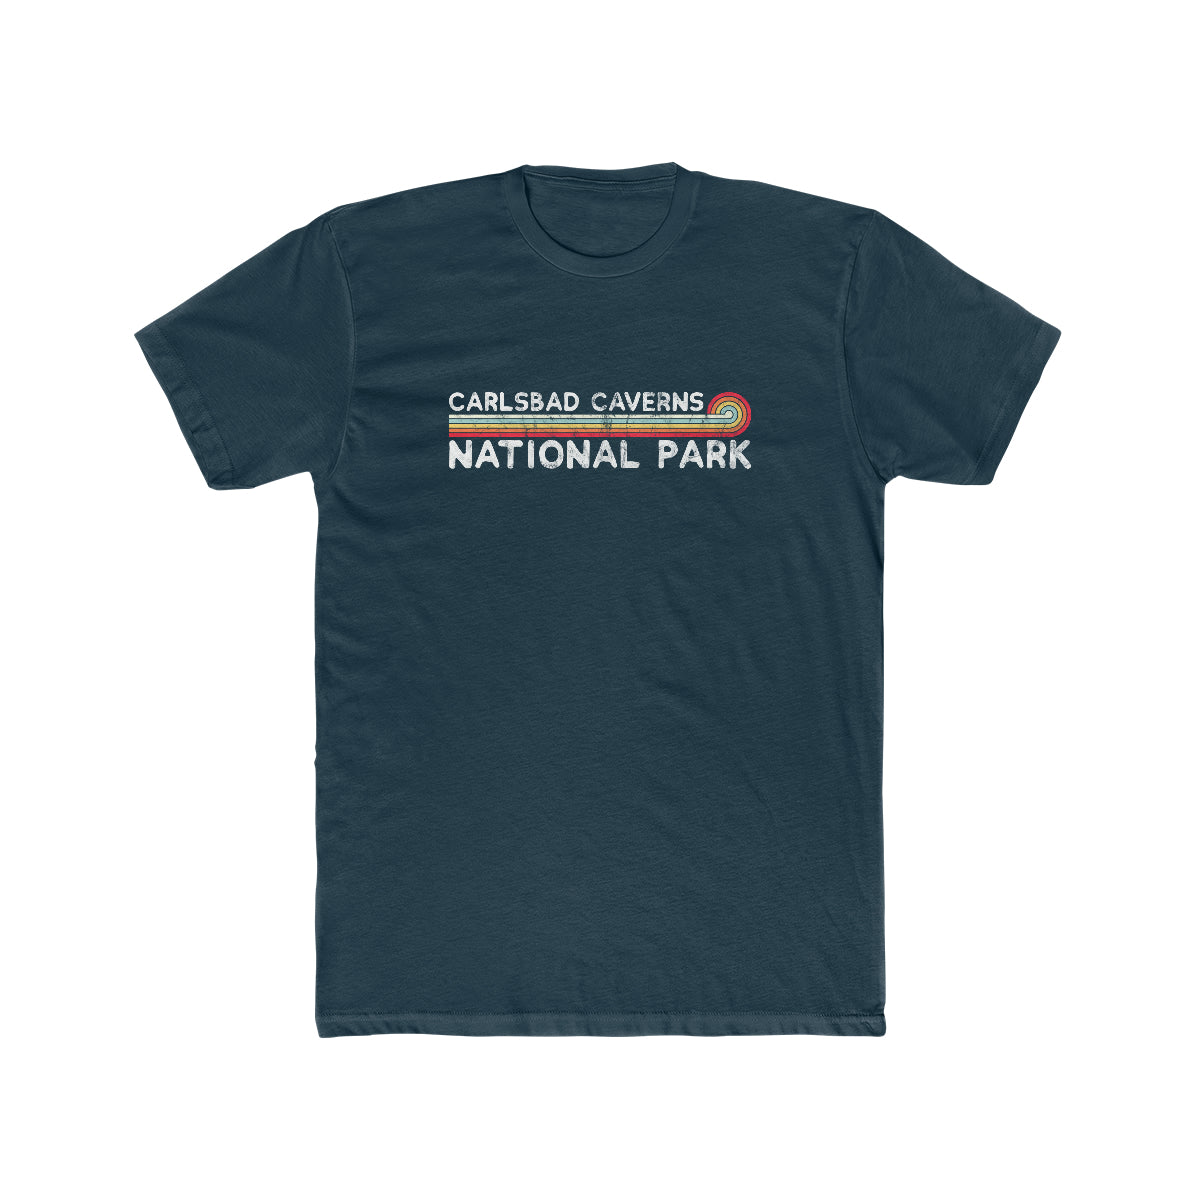 Carlsbad Caverns National Park T-Shirt - Vintage Stretched Sunrise